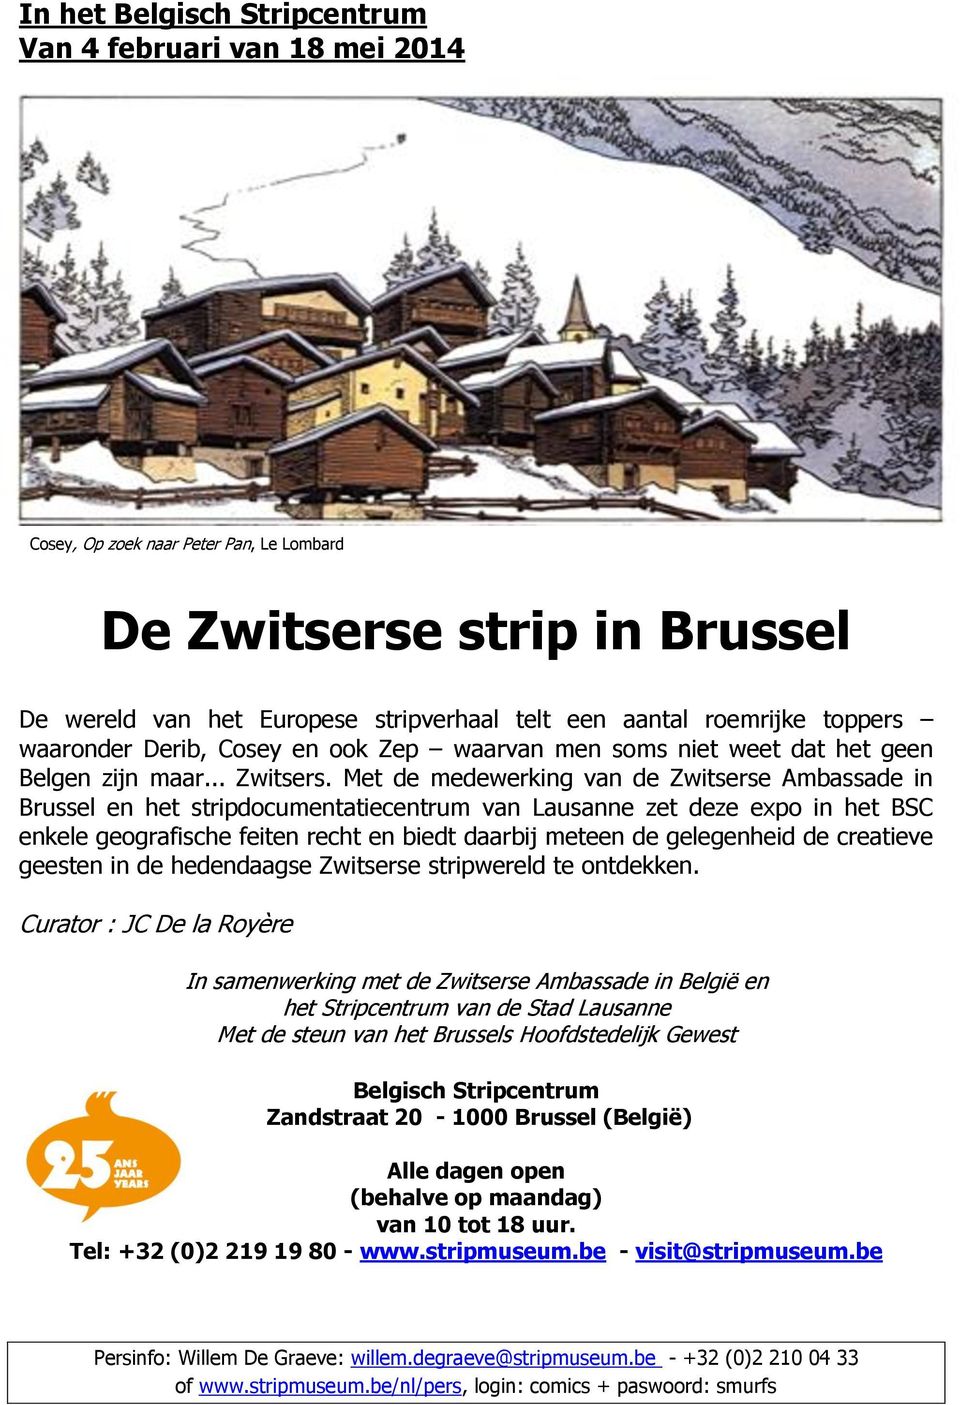 Met de medewerking van de Zwitserse Ambassade in Brussel en het stripdocumentatiecentrum van Lausanne zet deze expo in het BSC enkele geografische feiten recht en biedt daarbij meteen de gelegenheid